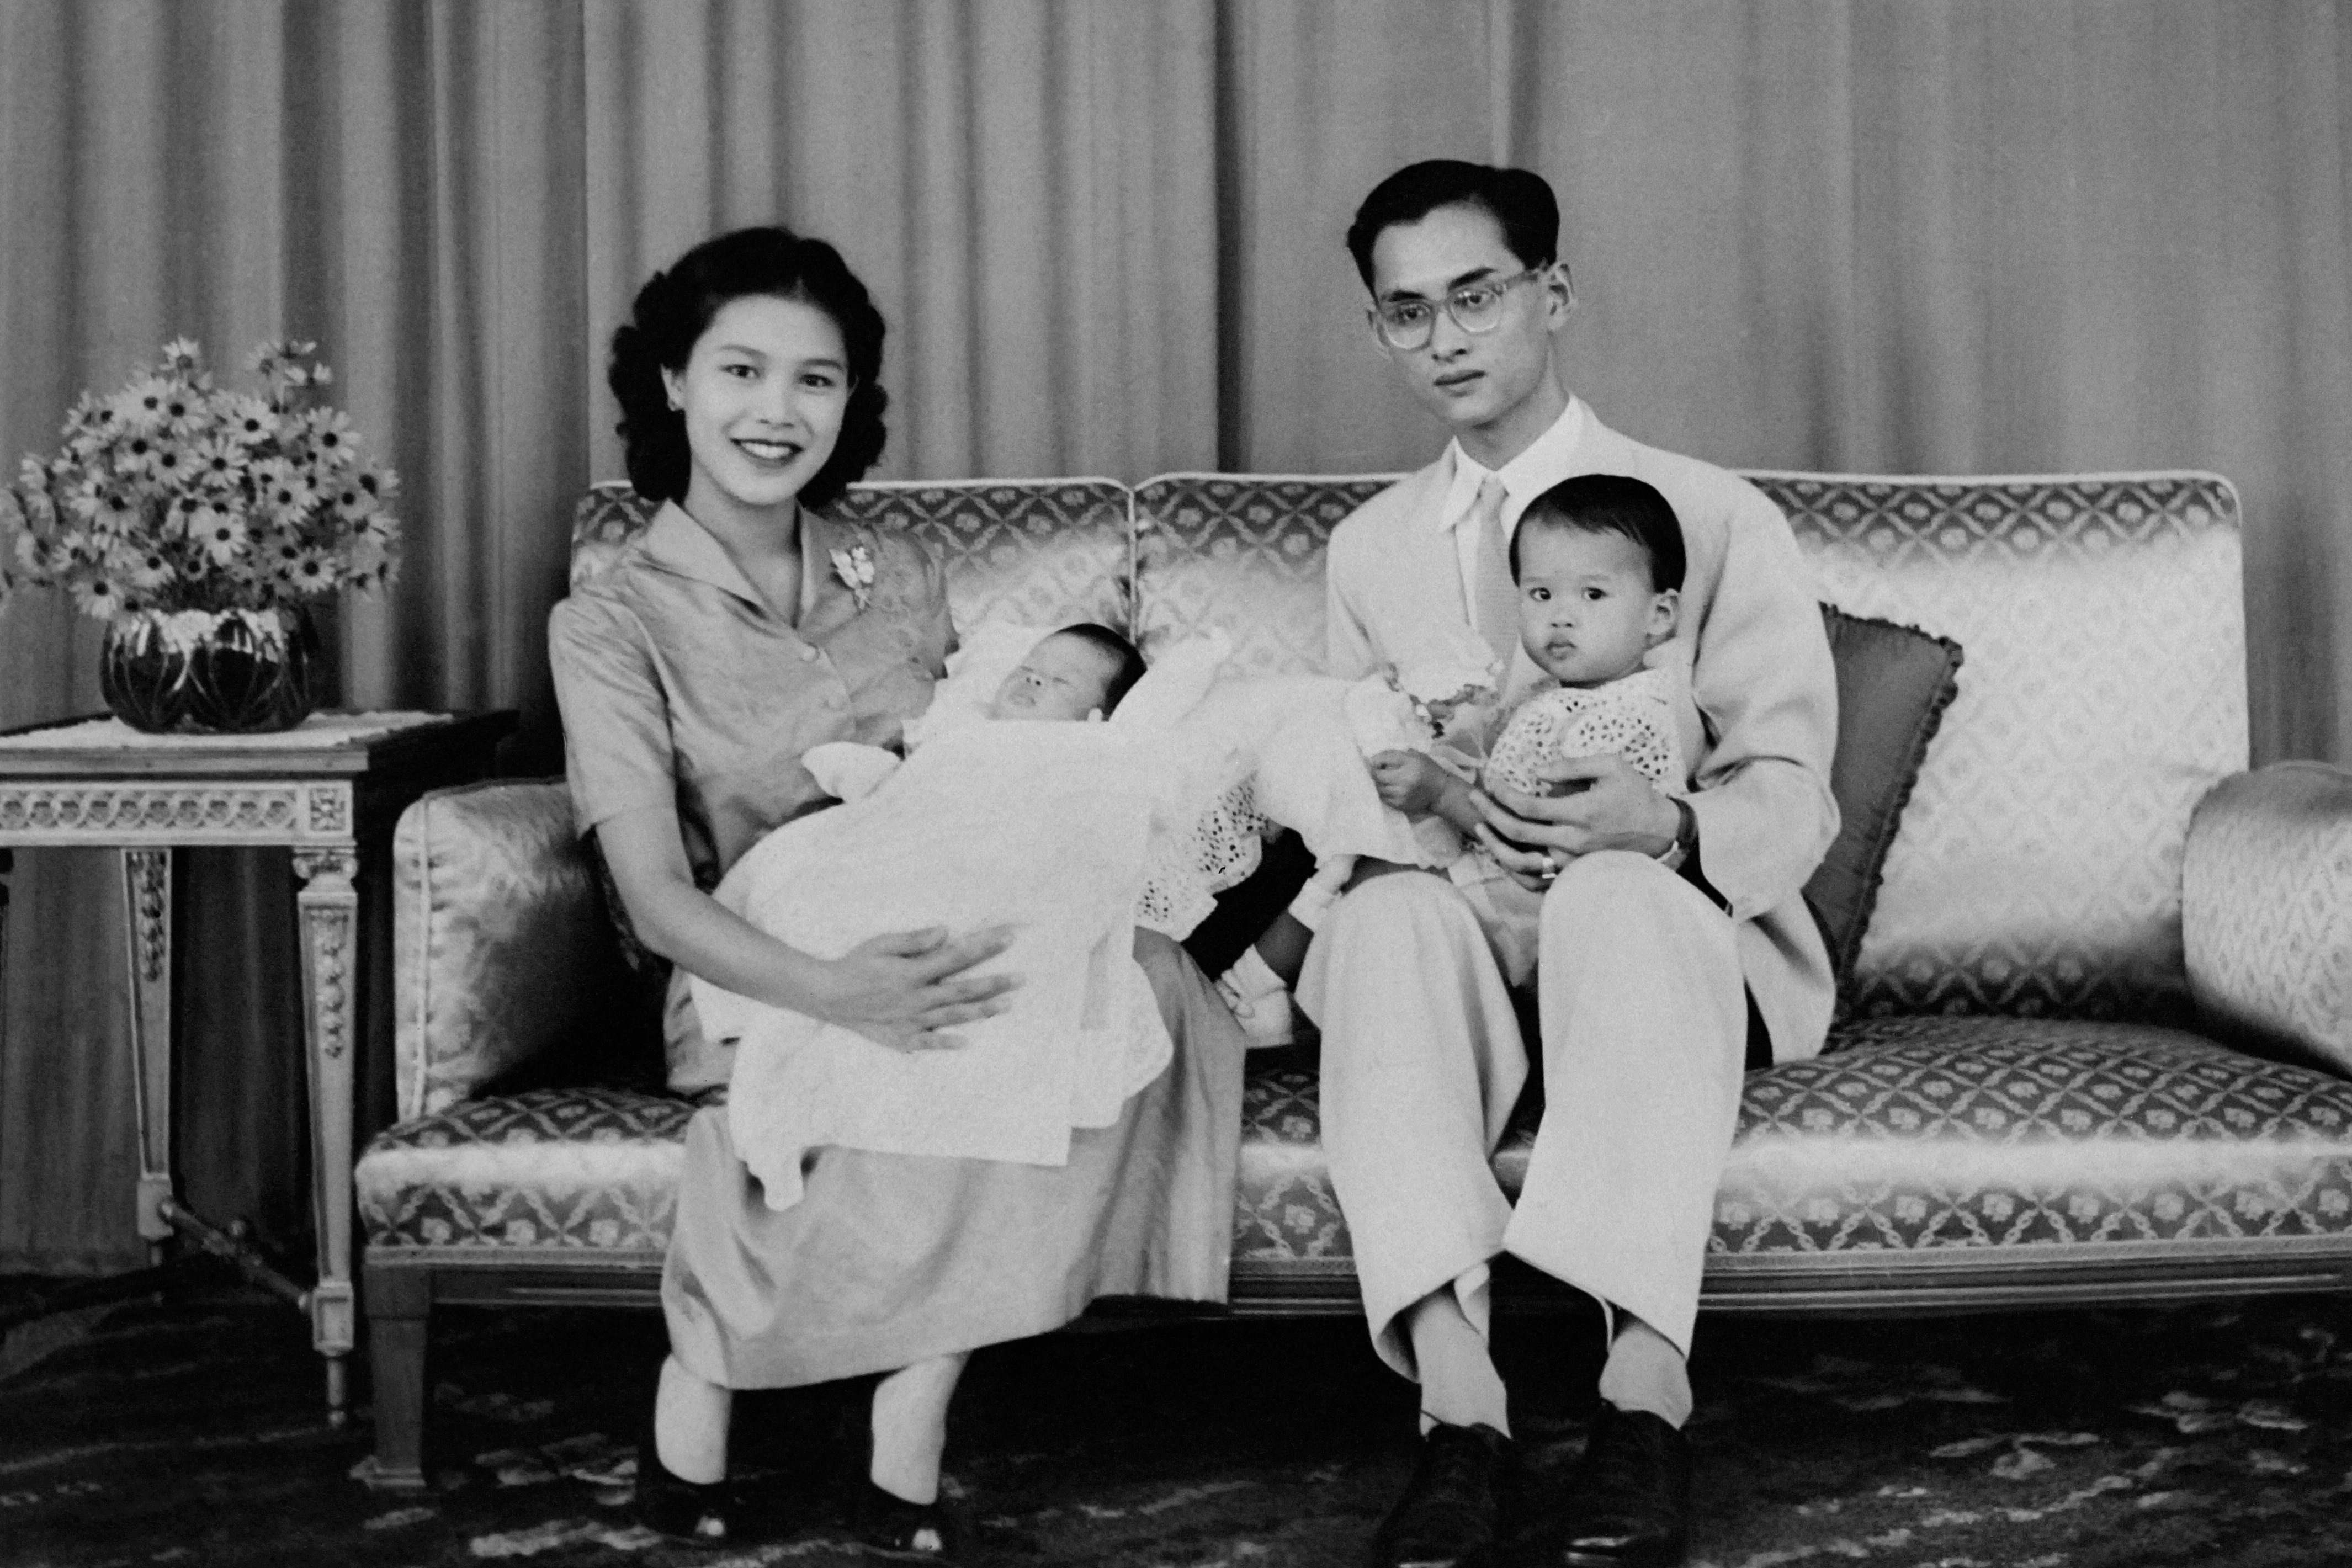 يونيو 1955 الملك التايلندي بهوميبول أدولياديج و سيريكيت كيتياكارا مع الأطفال